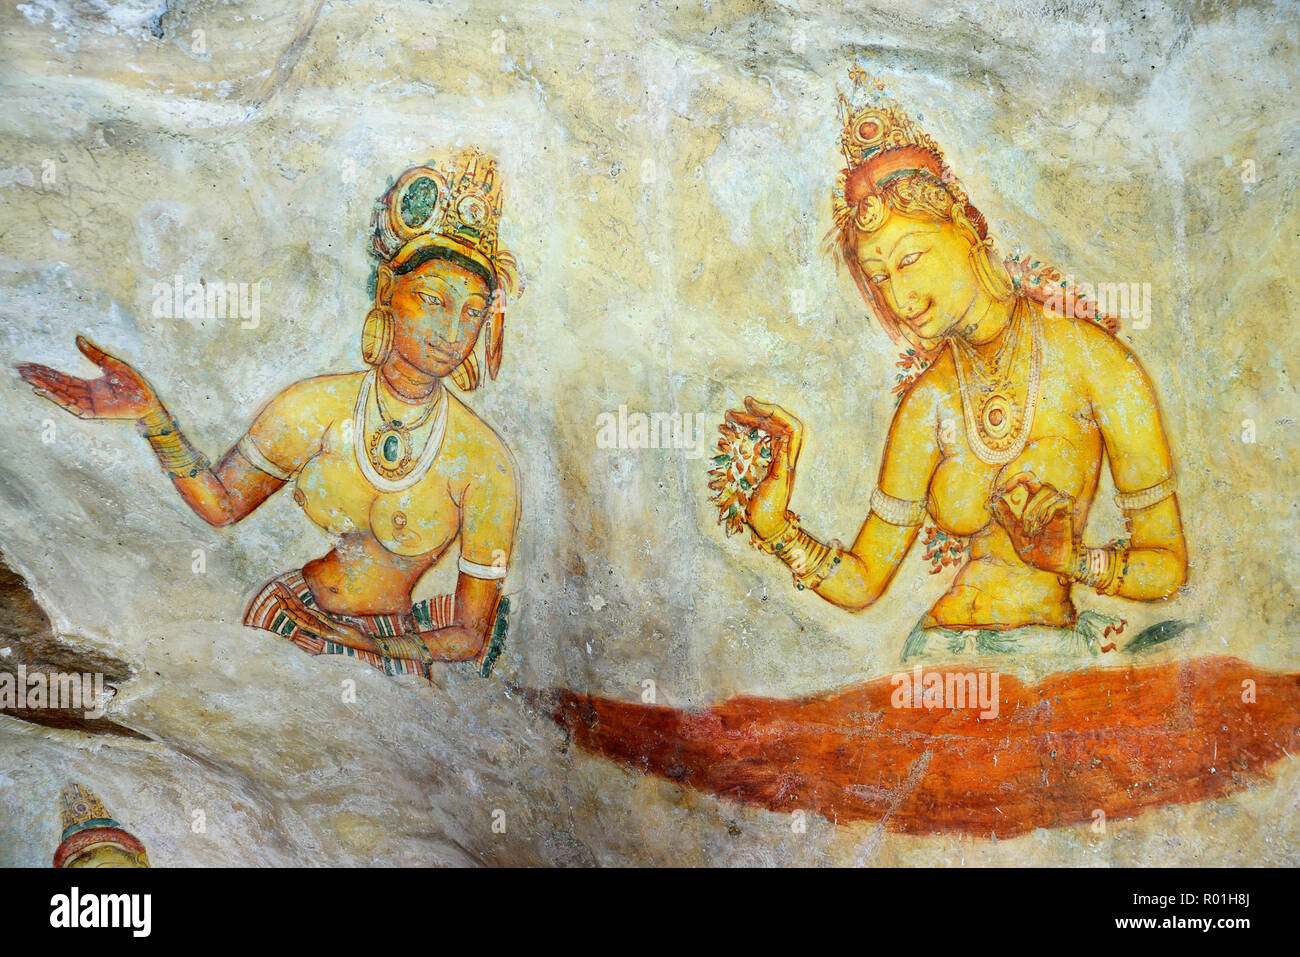 Fresque de le Nuage des Filles sur le rocher du Lion de Sigiriya, UNESCO World Heritage Site, Sri Lanka Banque D'Images